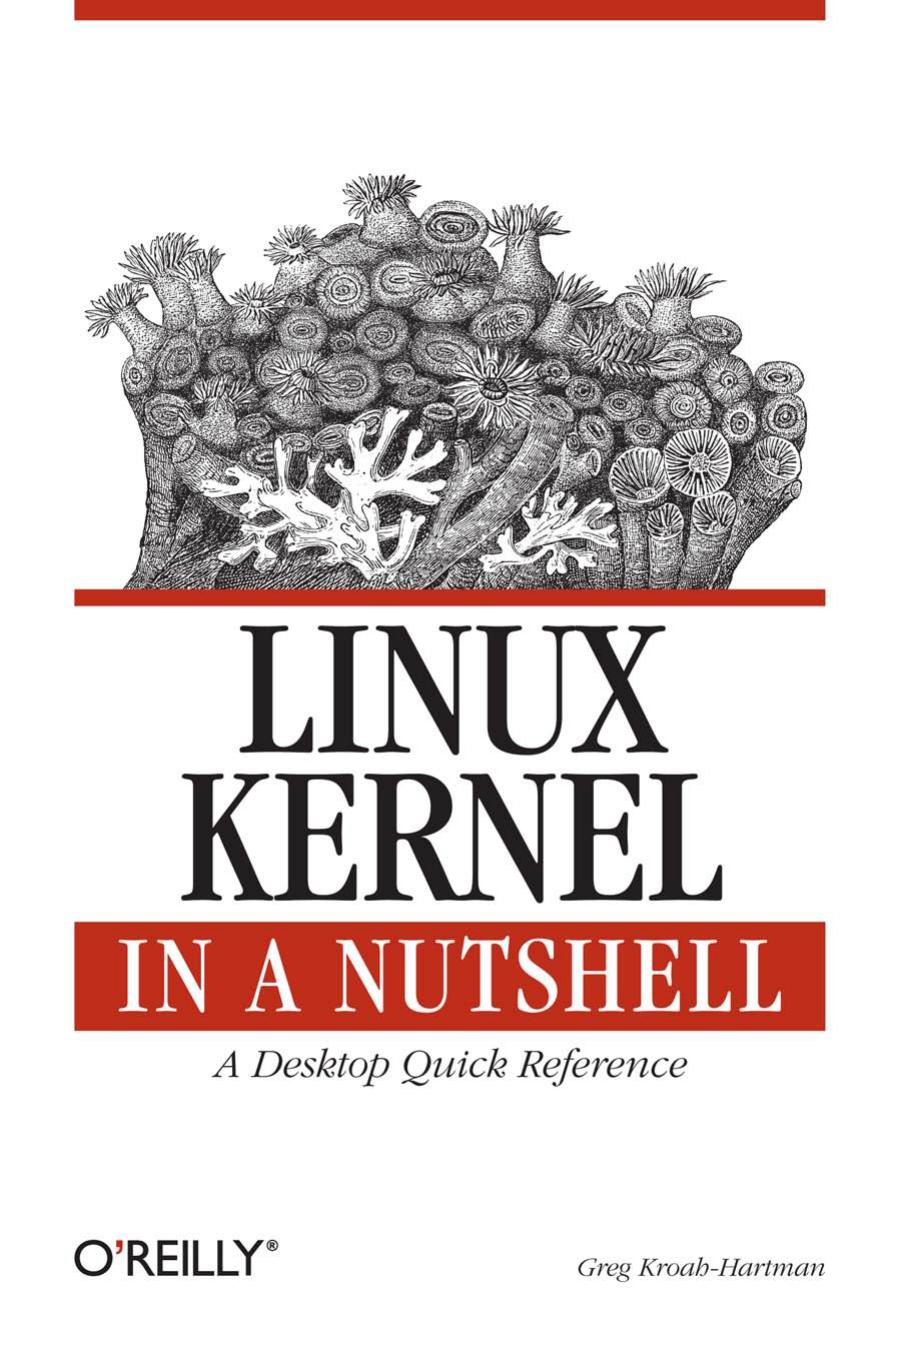 Linux Kernel in a Nutshell by Greg Kroah-Hartman